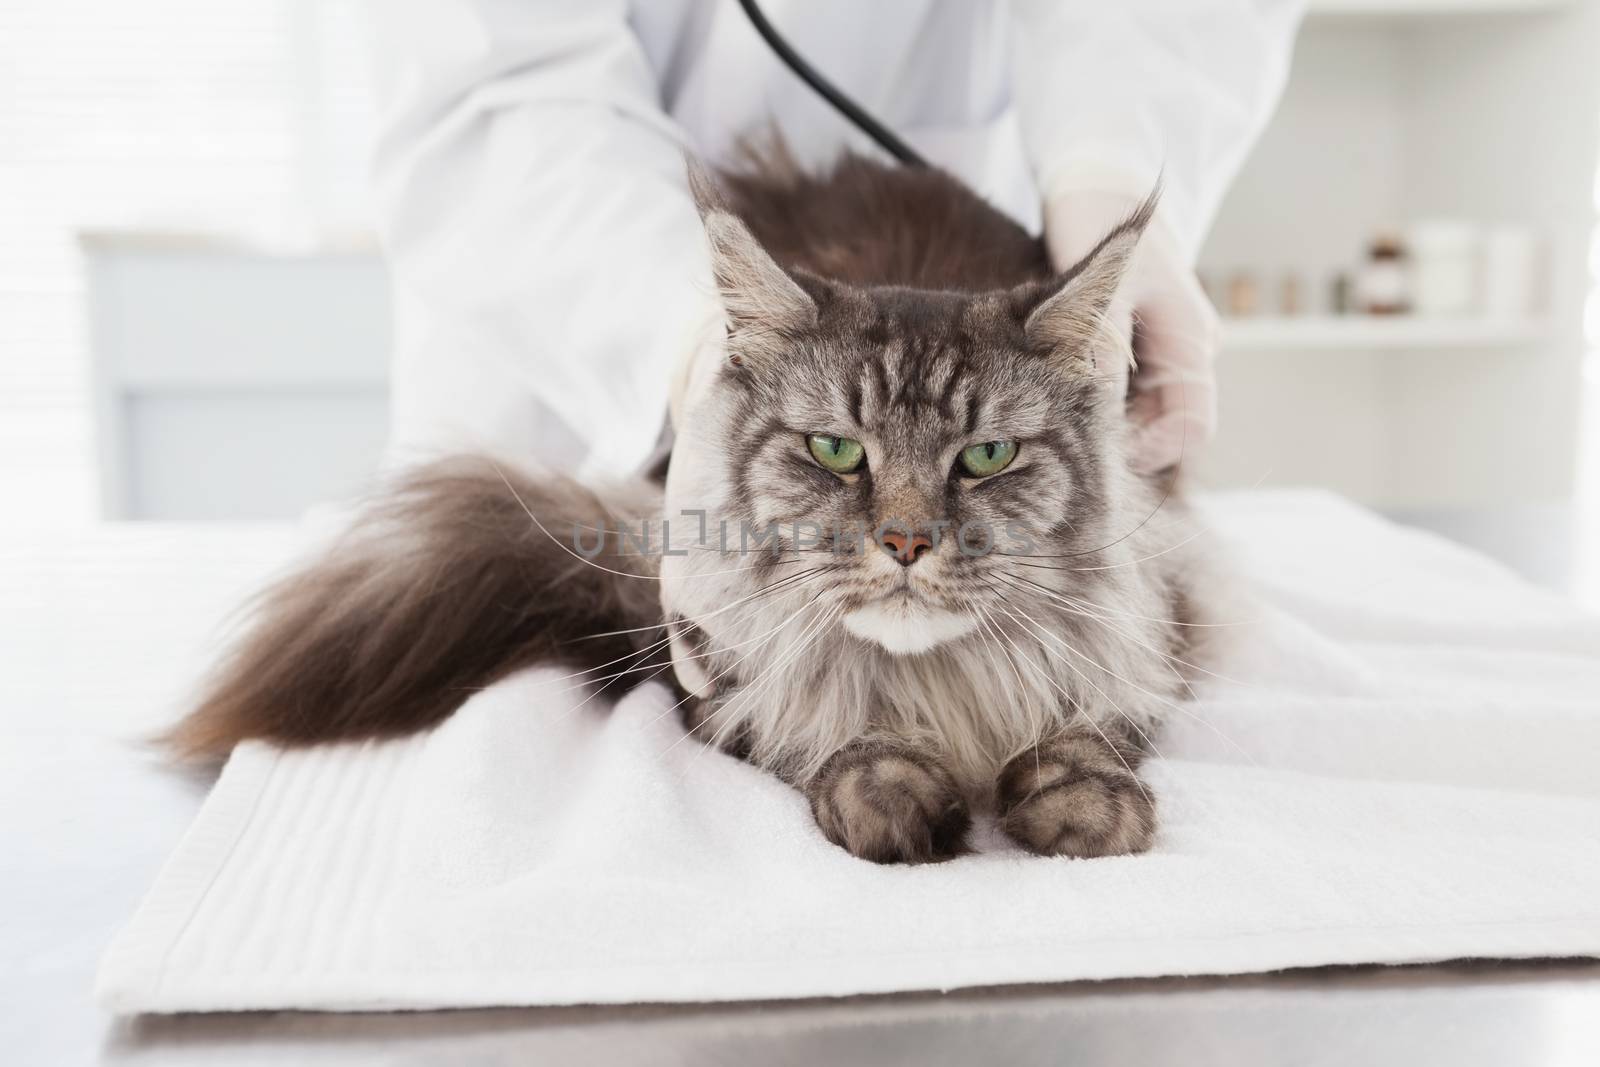 Veterinarian examining a grey cat in medical office